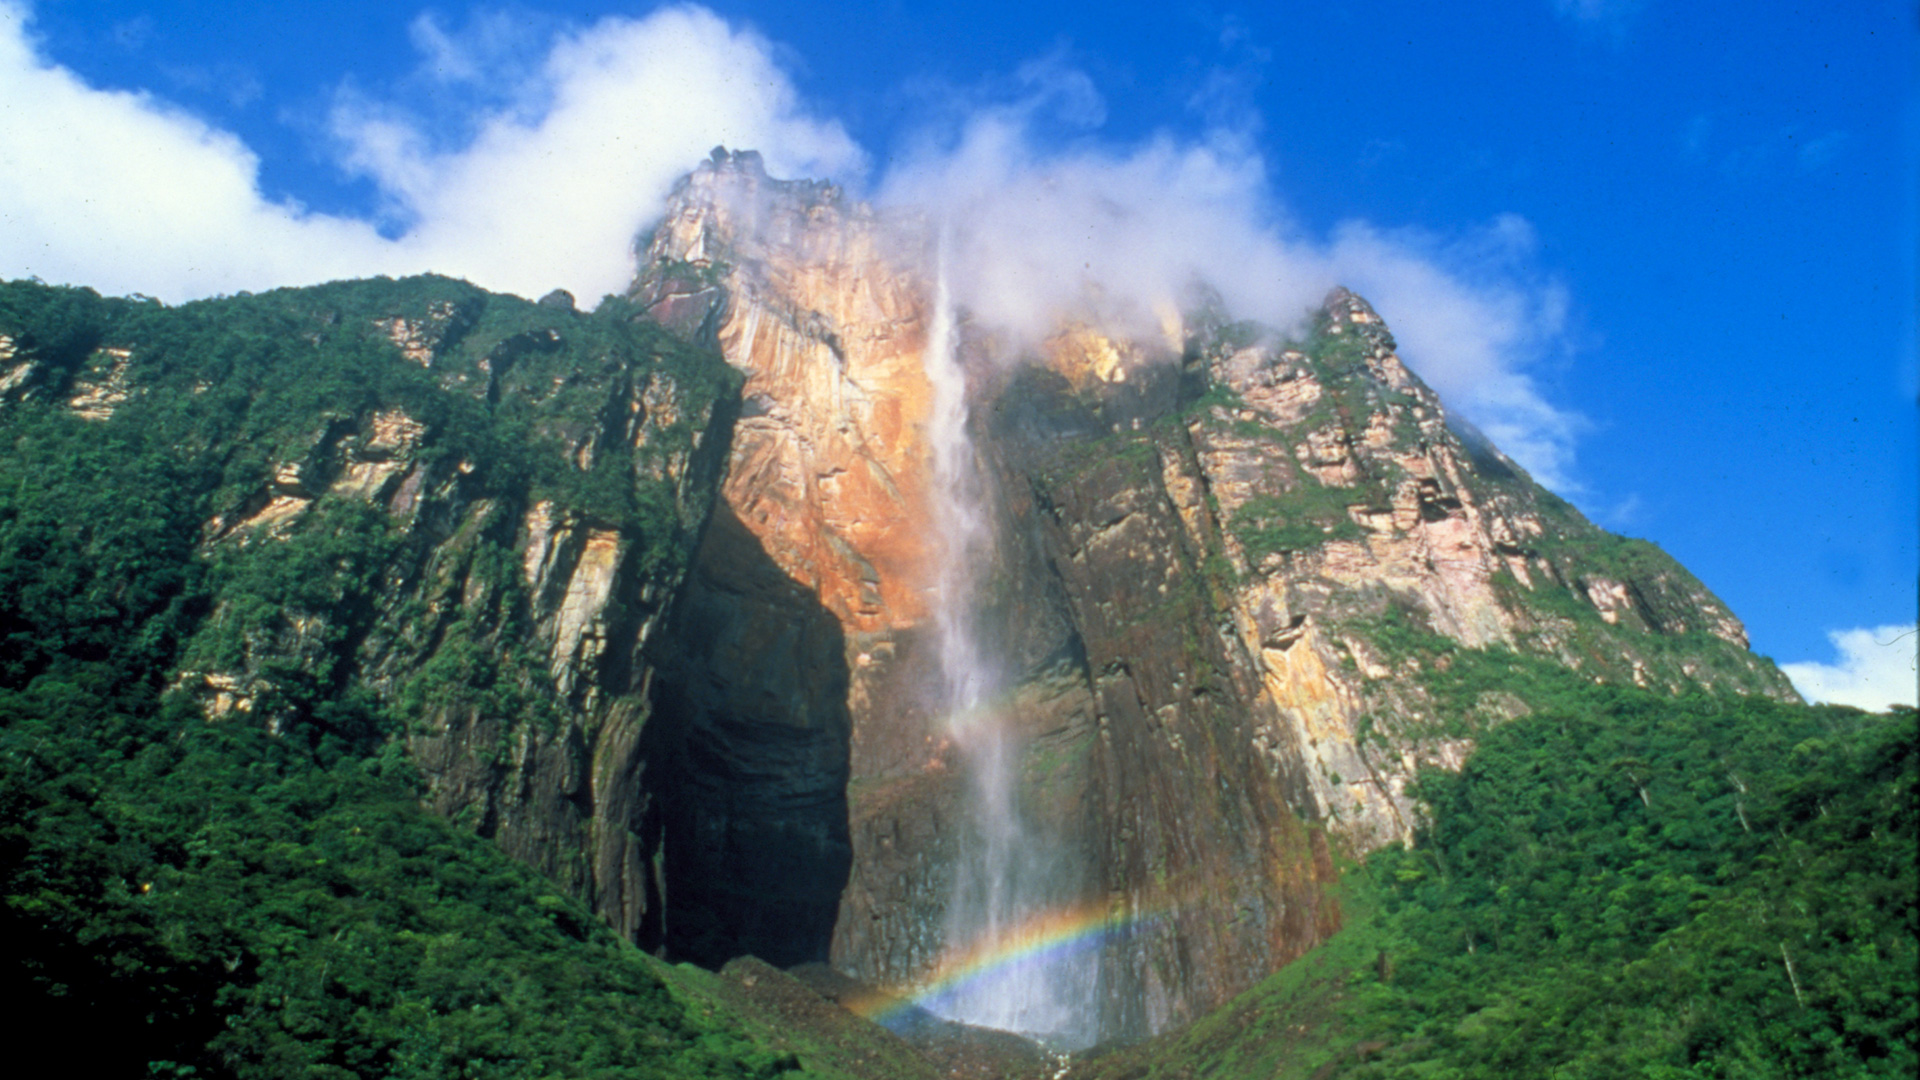 HD Angel Falls Venezuela Hq Desktop Hd Wallpaper Nature Photo